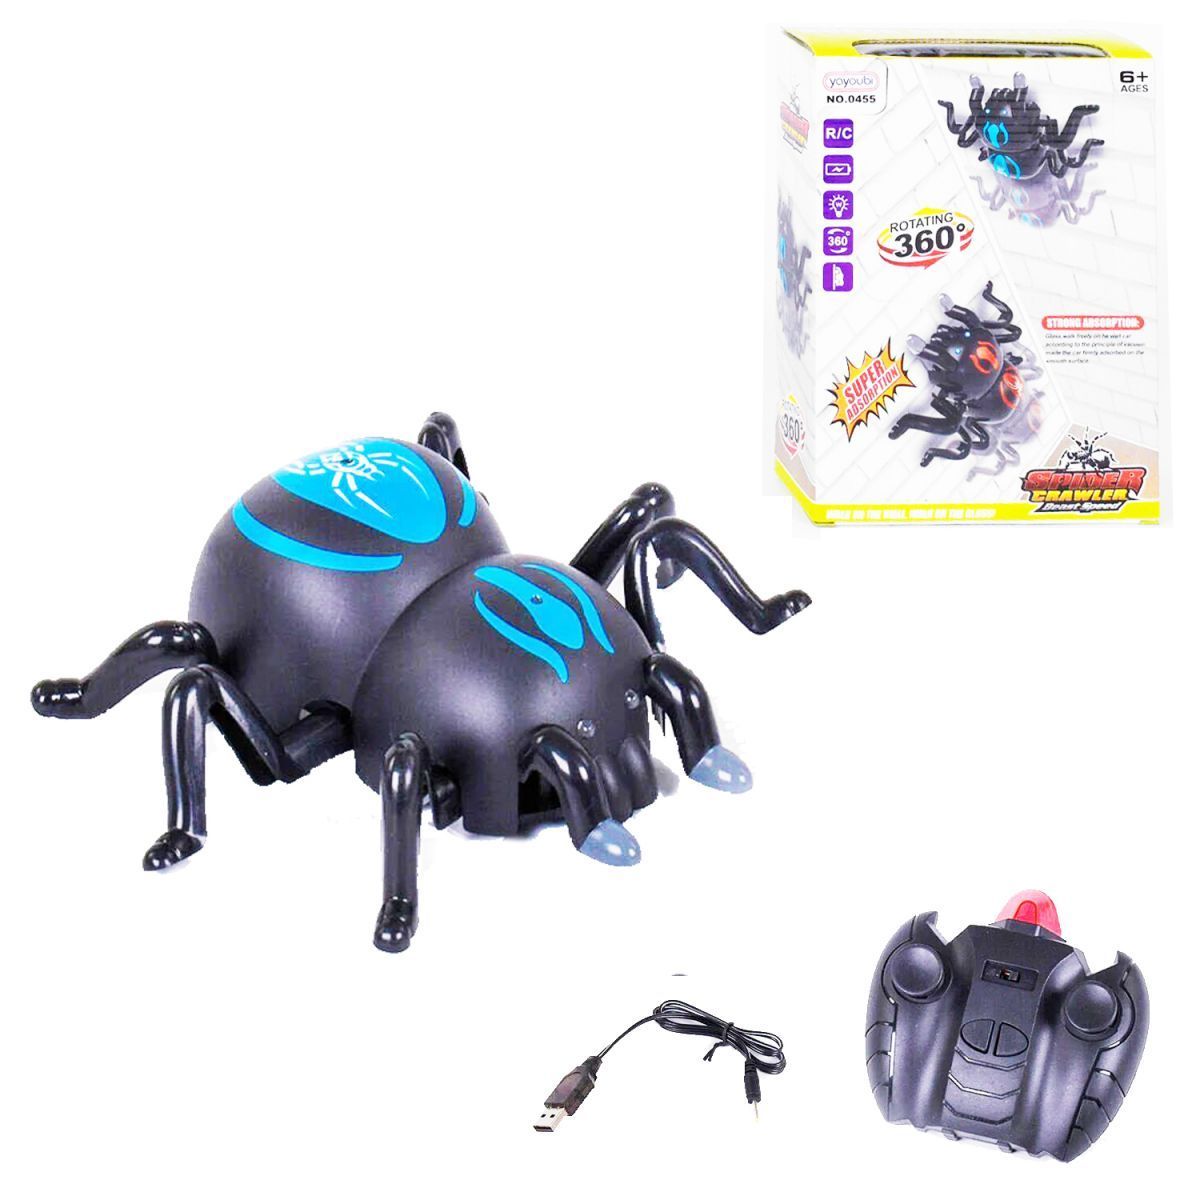 Уцінка.  Павук антигравітаційний, синій - Не працює на пульті вправо - вліво, не світиться одне око та не притягується до стіни